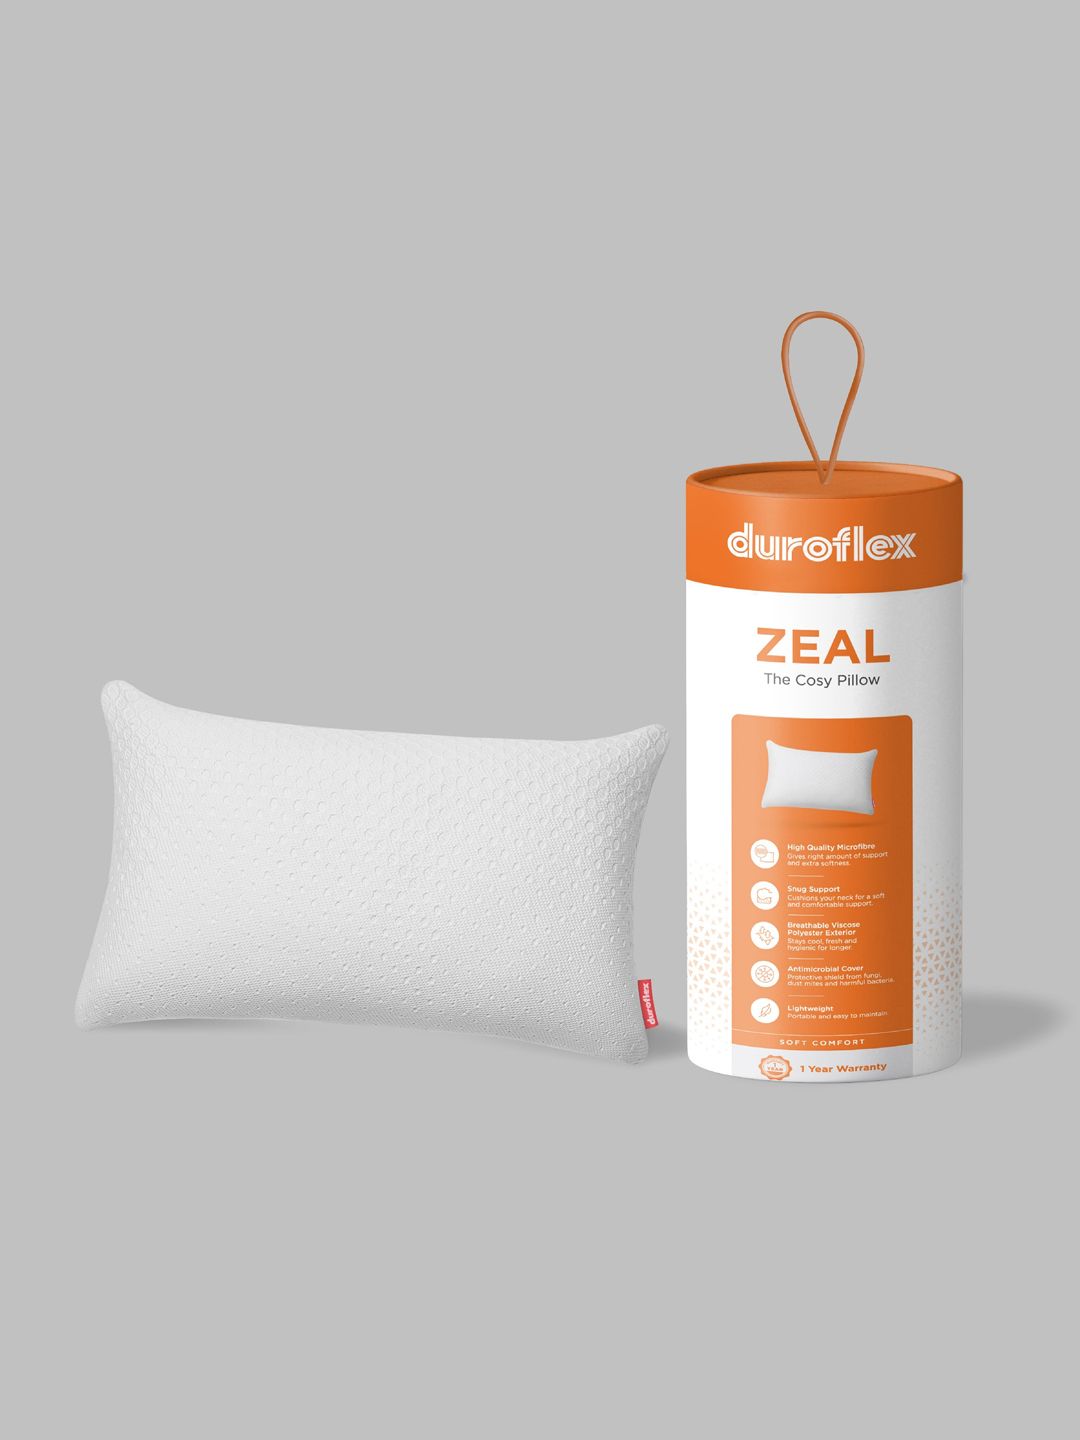 Duroflex White Textured Antimicrobial Sleep Pillow Price in India